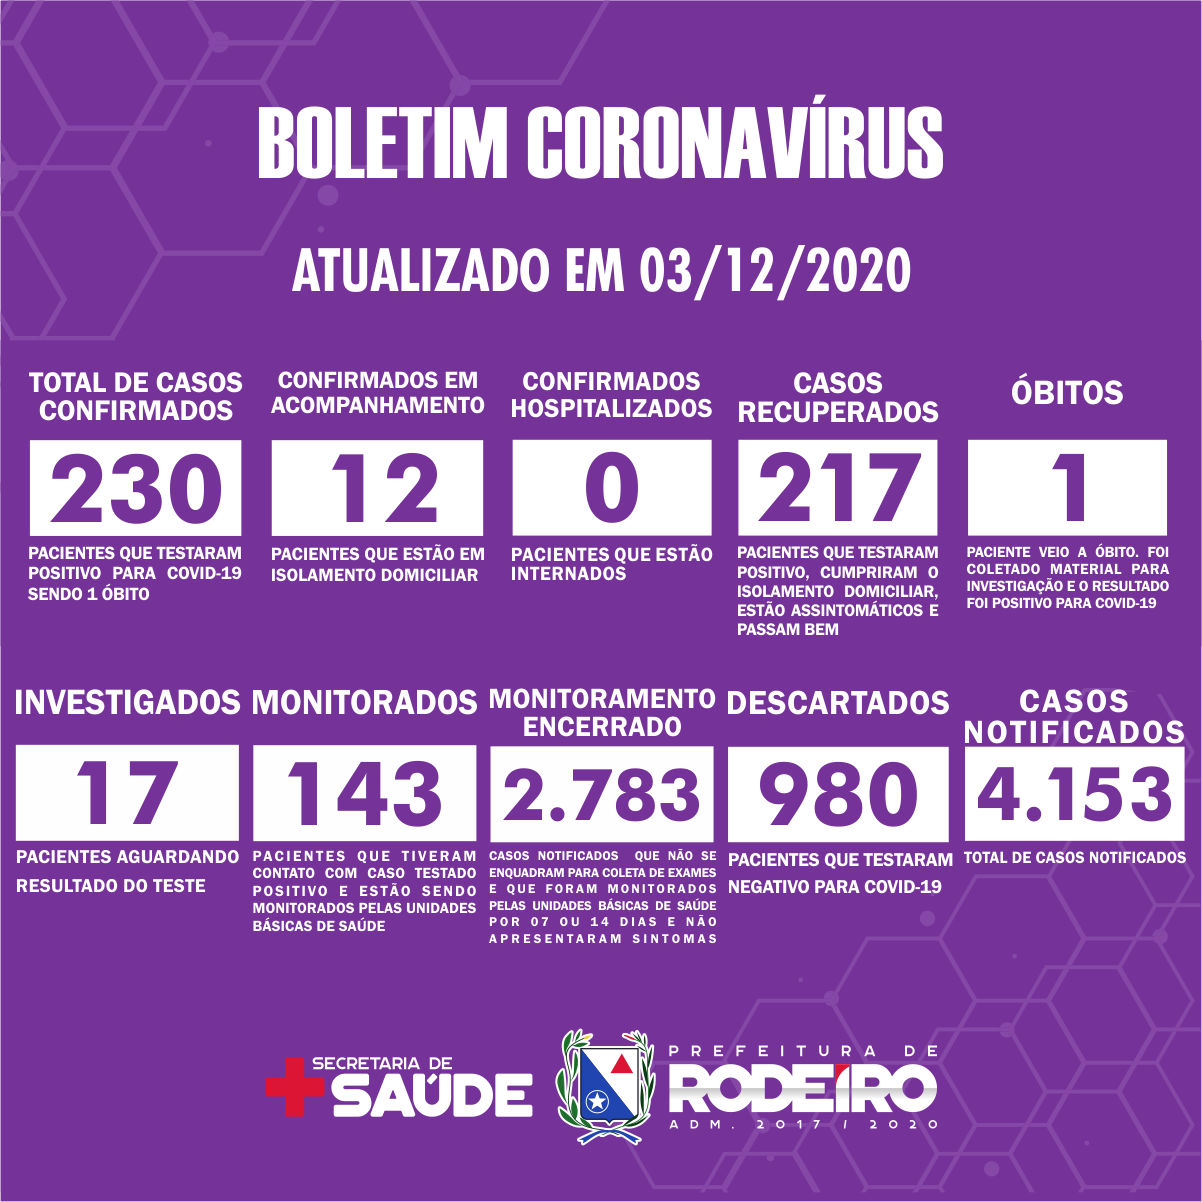 Boletim Epidemiológico do Município de Rodeiro sobre coronavírus, atualizado em 03/12/2020